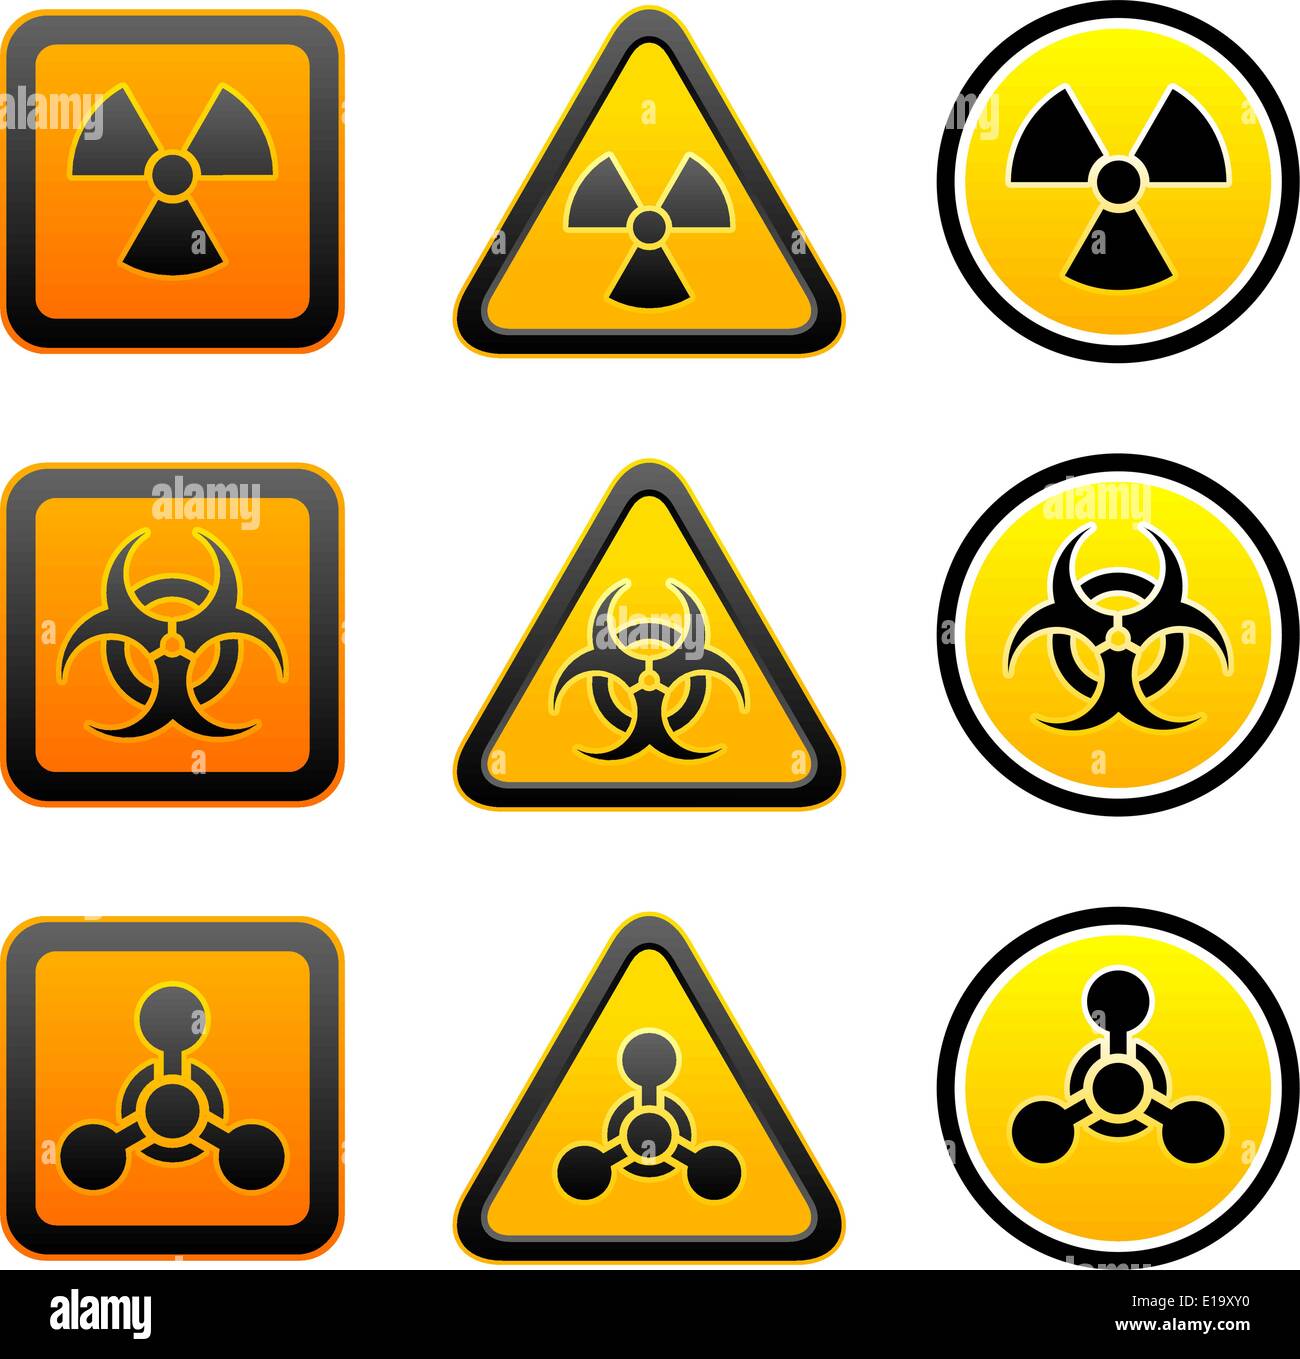 Setzen Sie Gefahr Warnung radioaktive Symbole - Strahlung - chemische Waffe - Biohazard Zeichen Stock Vektor